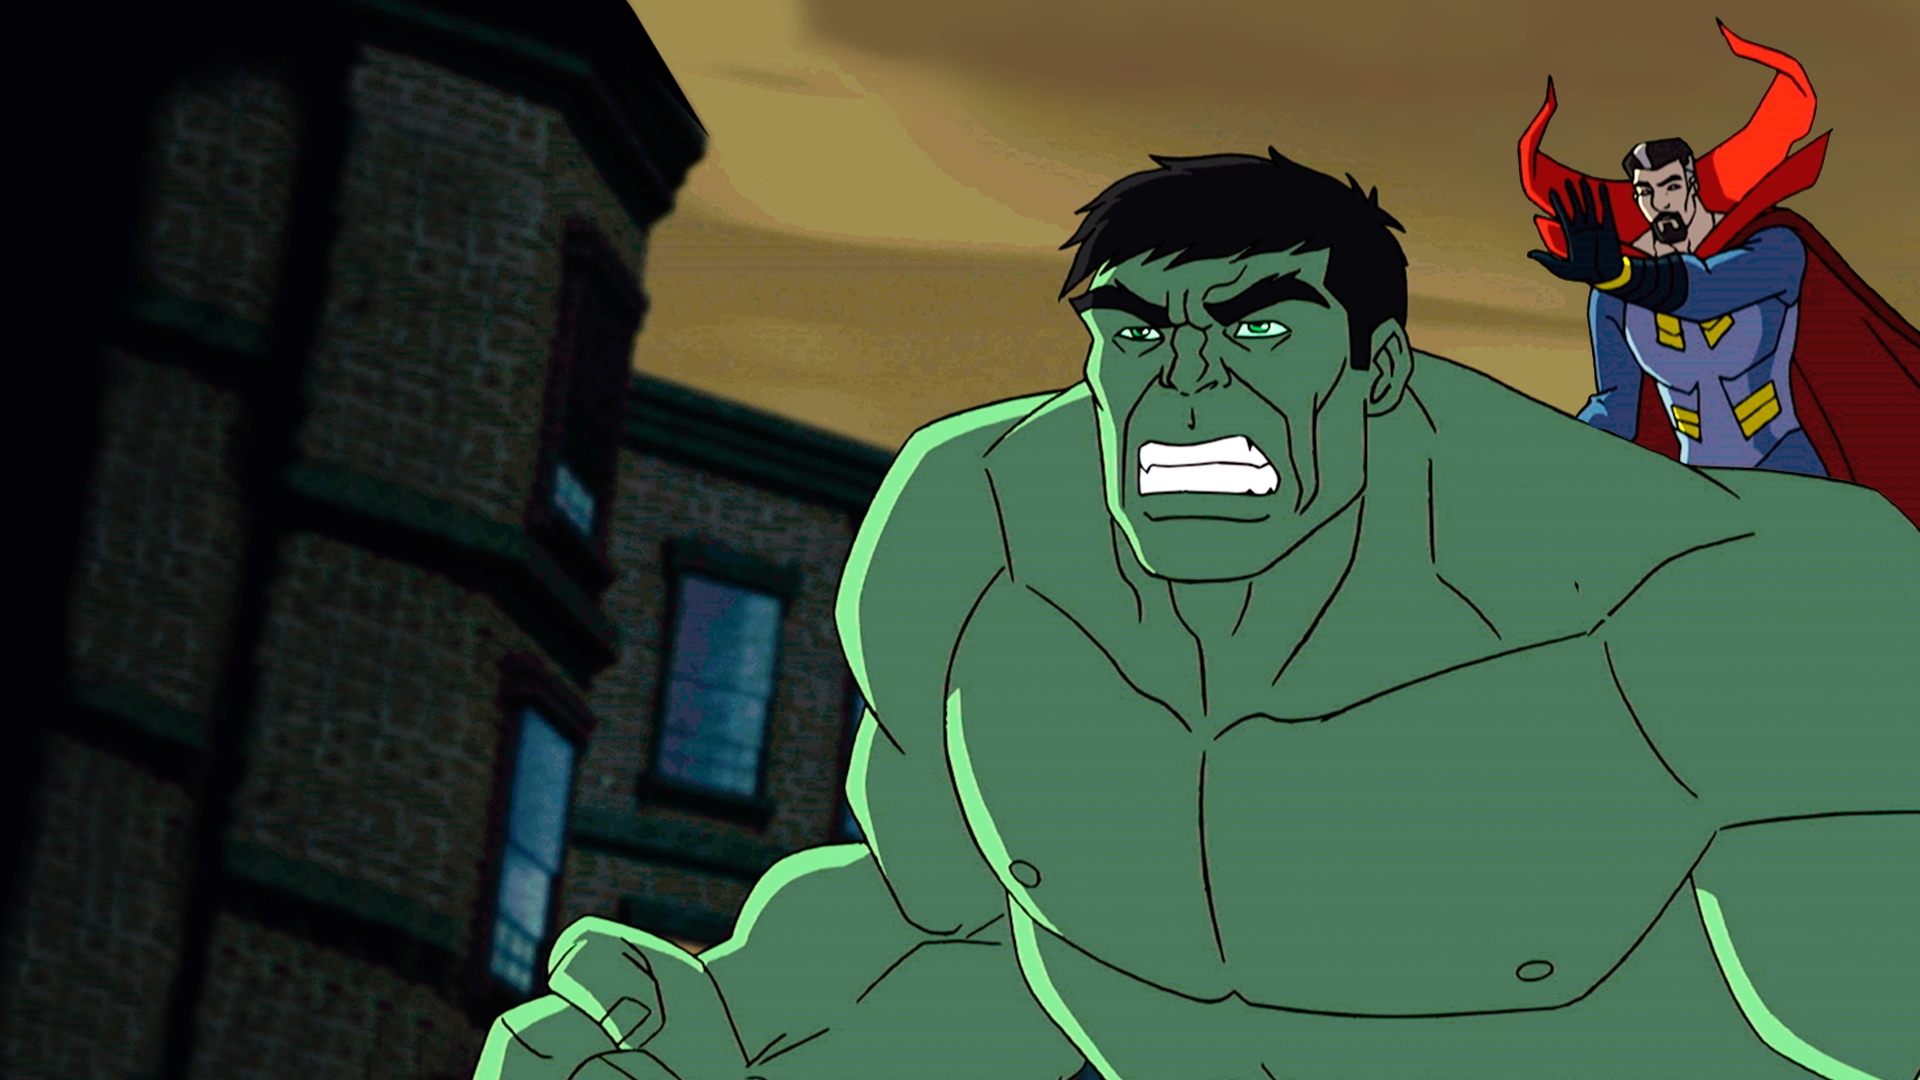 O Incrivel Hulk - Onde os Monstros Habitam